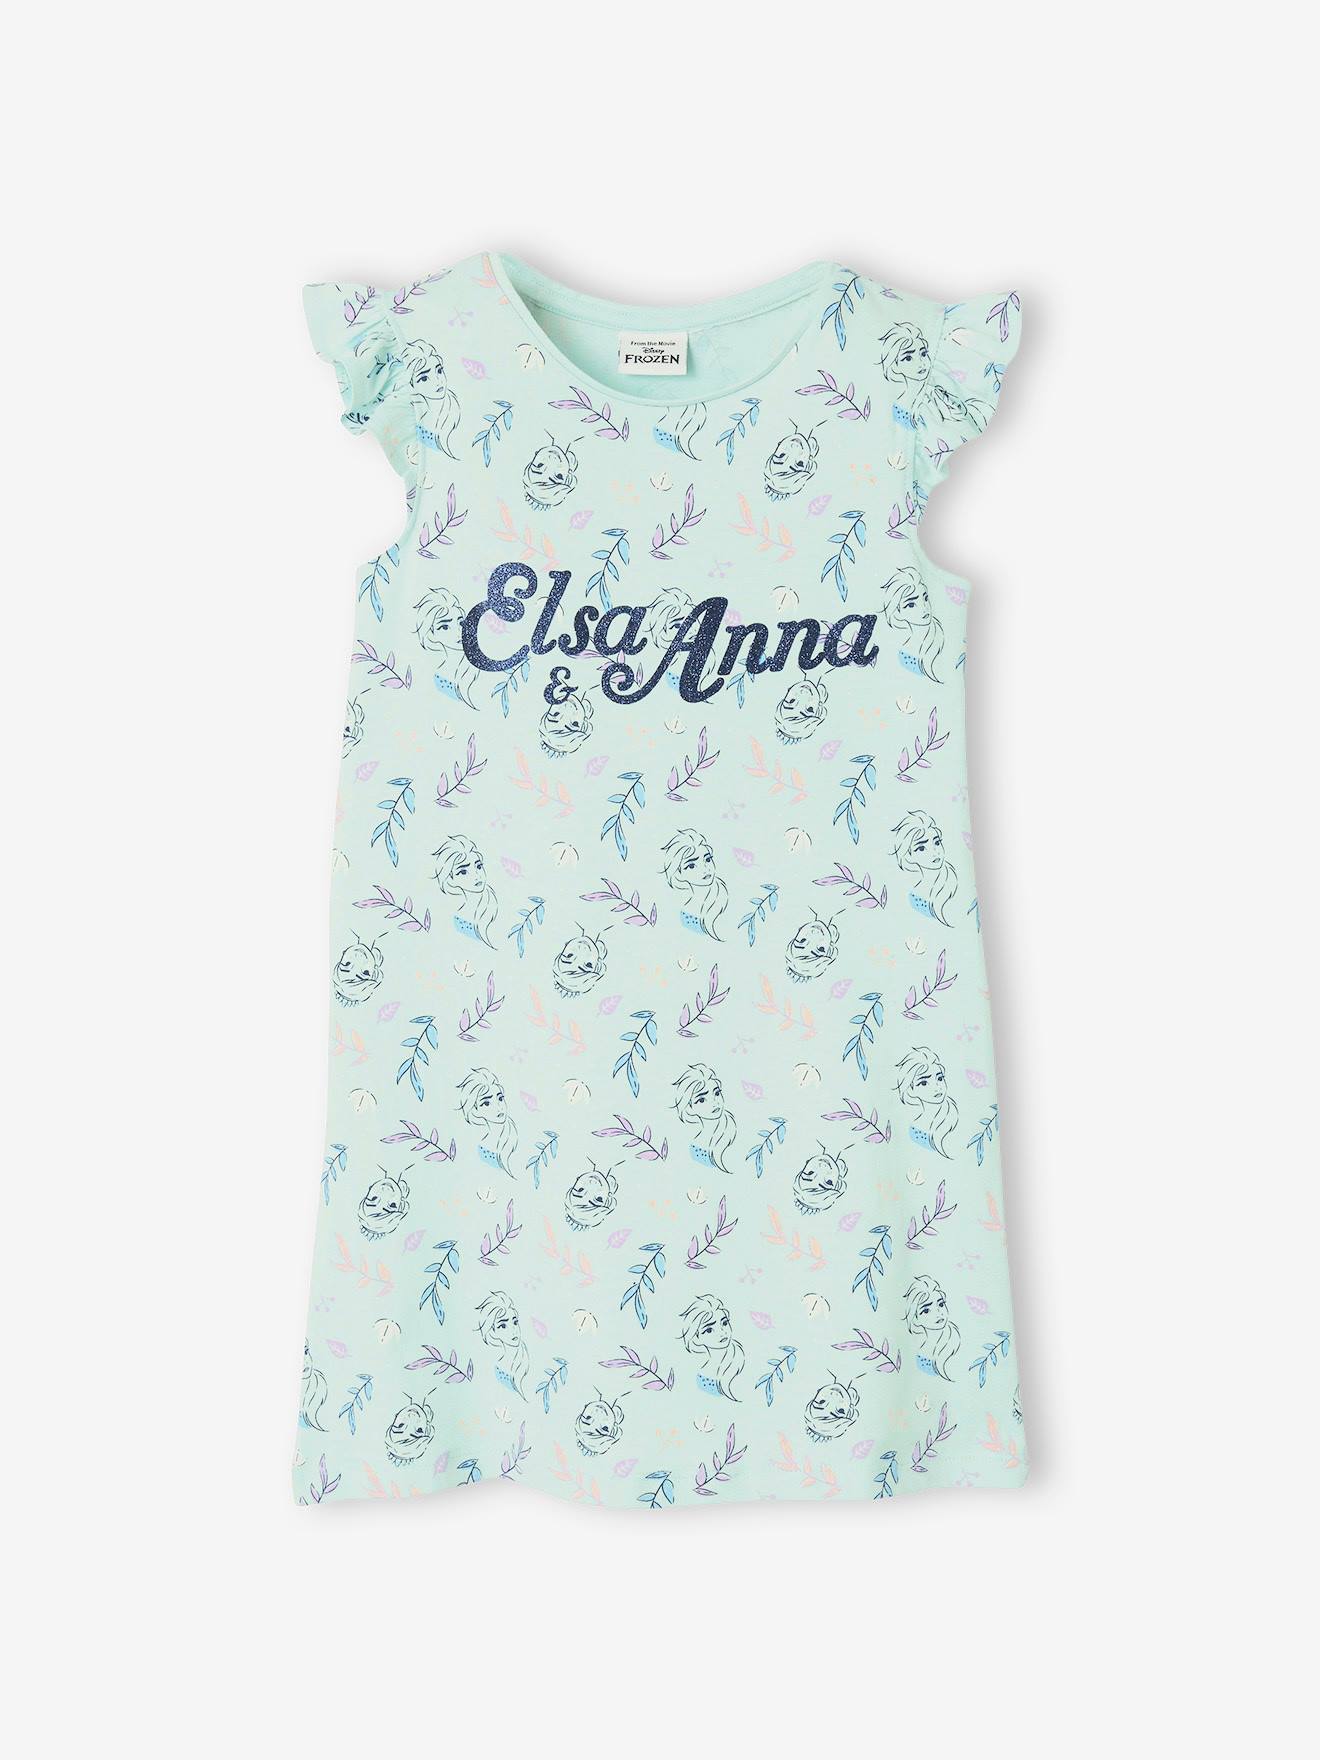 Robe De Nuit Manches Longues Vêtement Enfant 3-12 Ans Idée Cadeau Anniversaire Disney Chemise De Nuit Fille De La Reine des Neiges avec Princesse Anna Et Elsa 